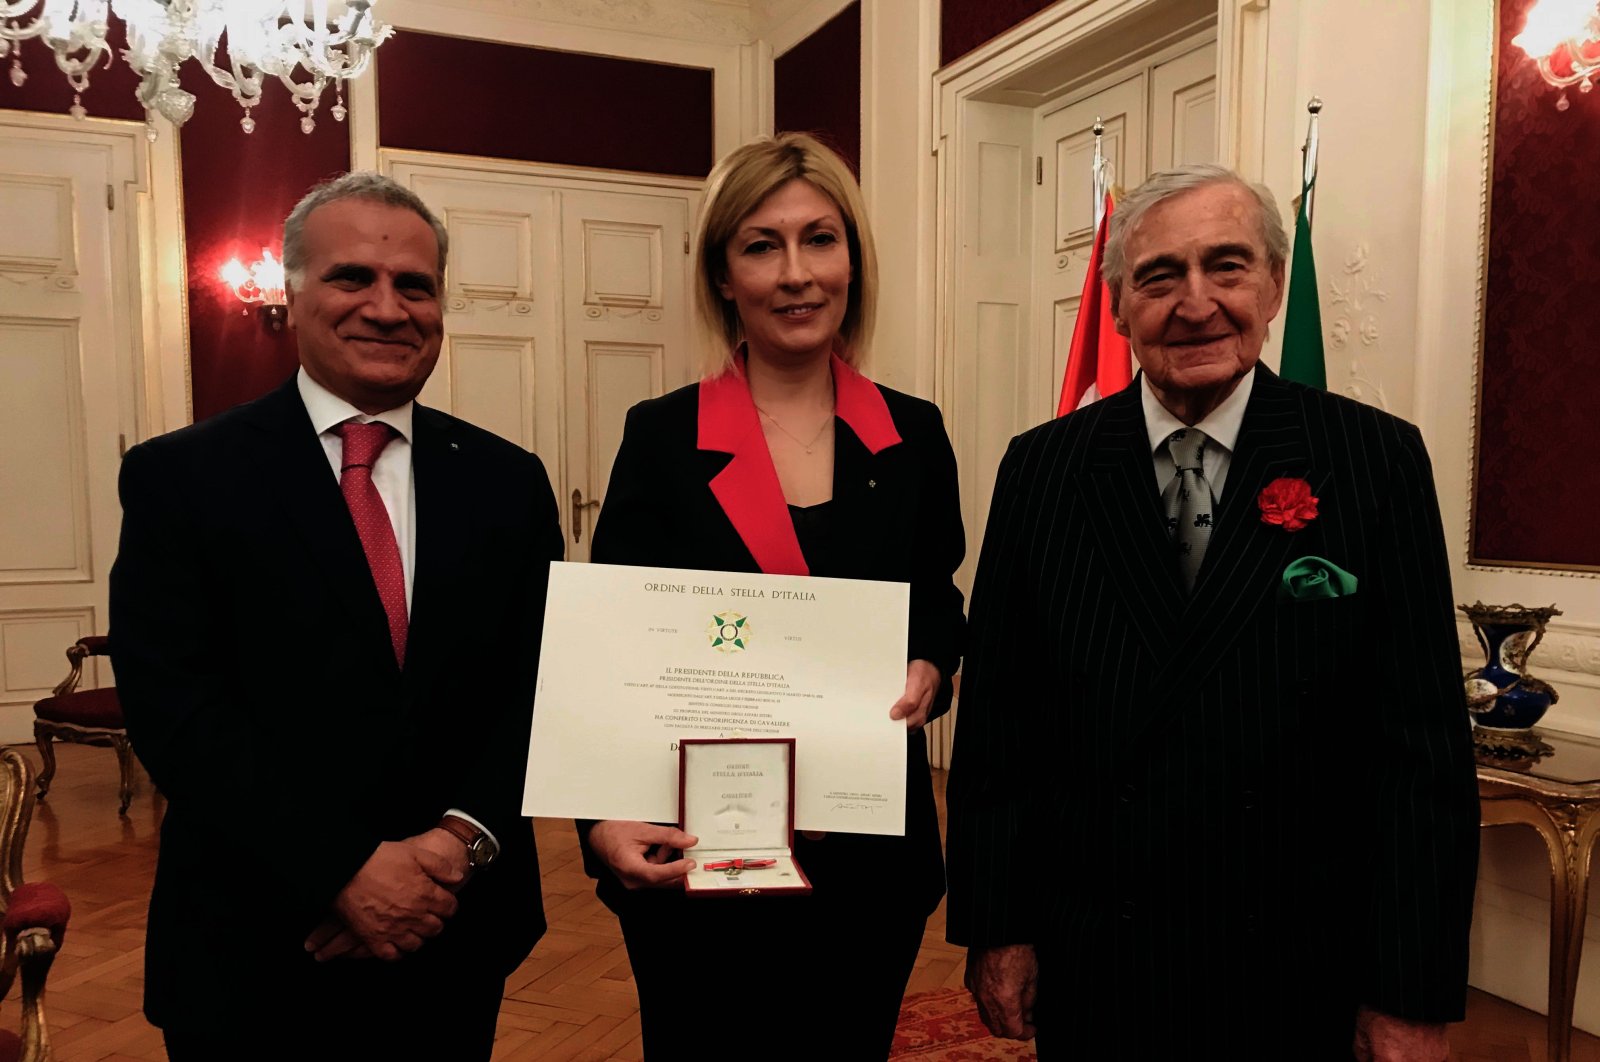 Museum Rahmi Koç Türkiye menerima ‘Order of the Star of Italy’